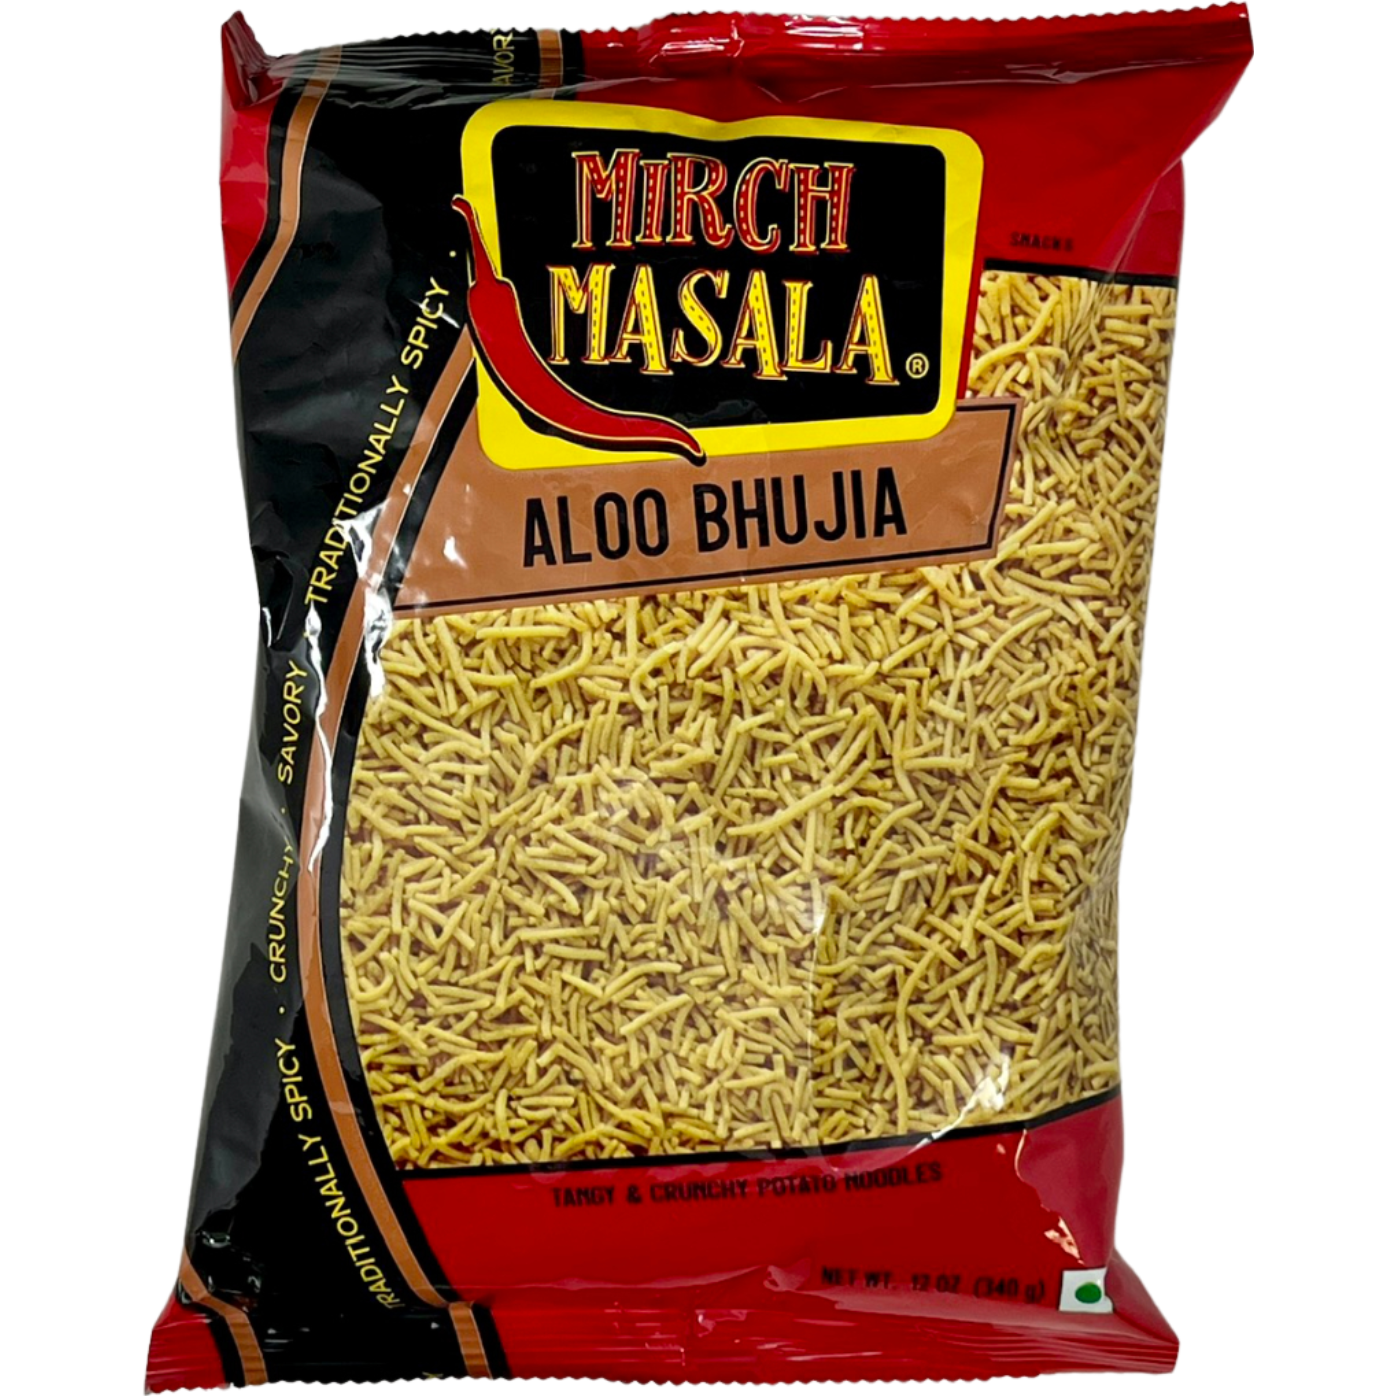 Pack of 5 - Mirch Masala Aloo Bhujia - 12 Oz (340 Gm)